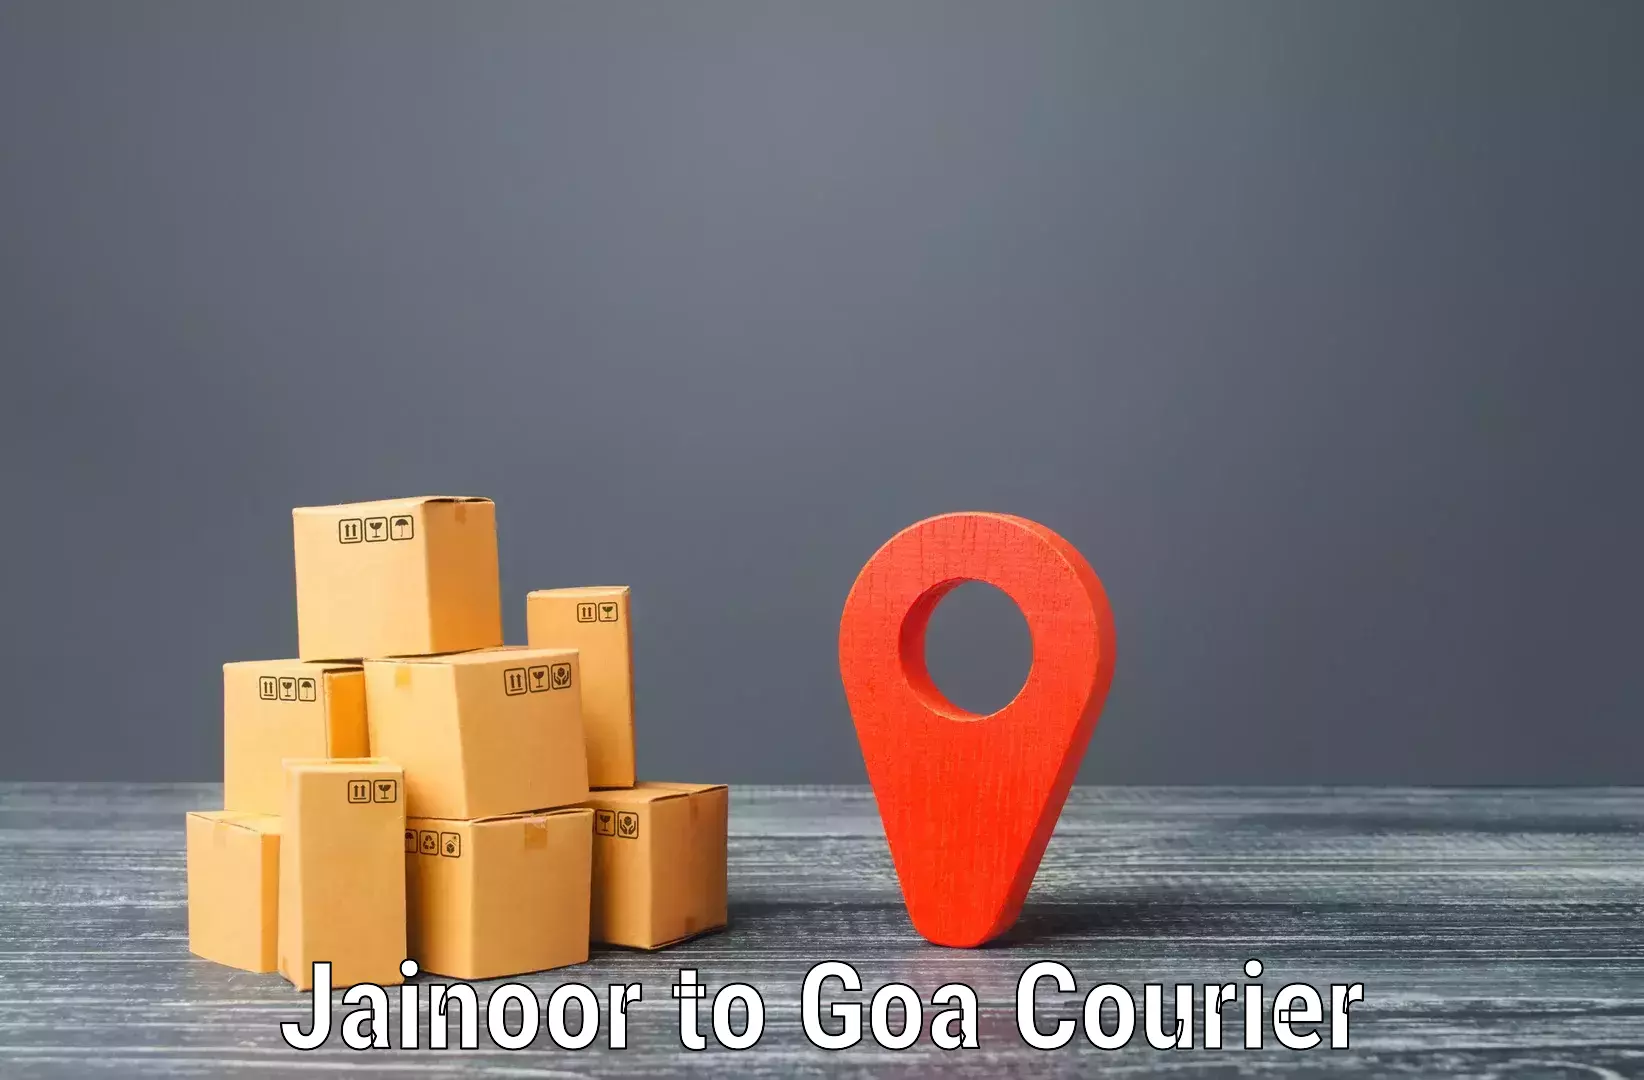 Comprehensive parcel tracking Jainoor to Margao